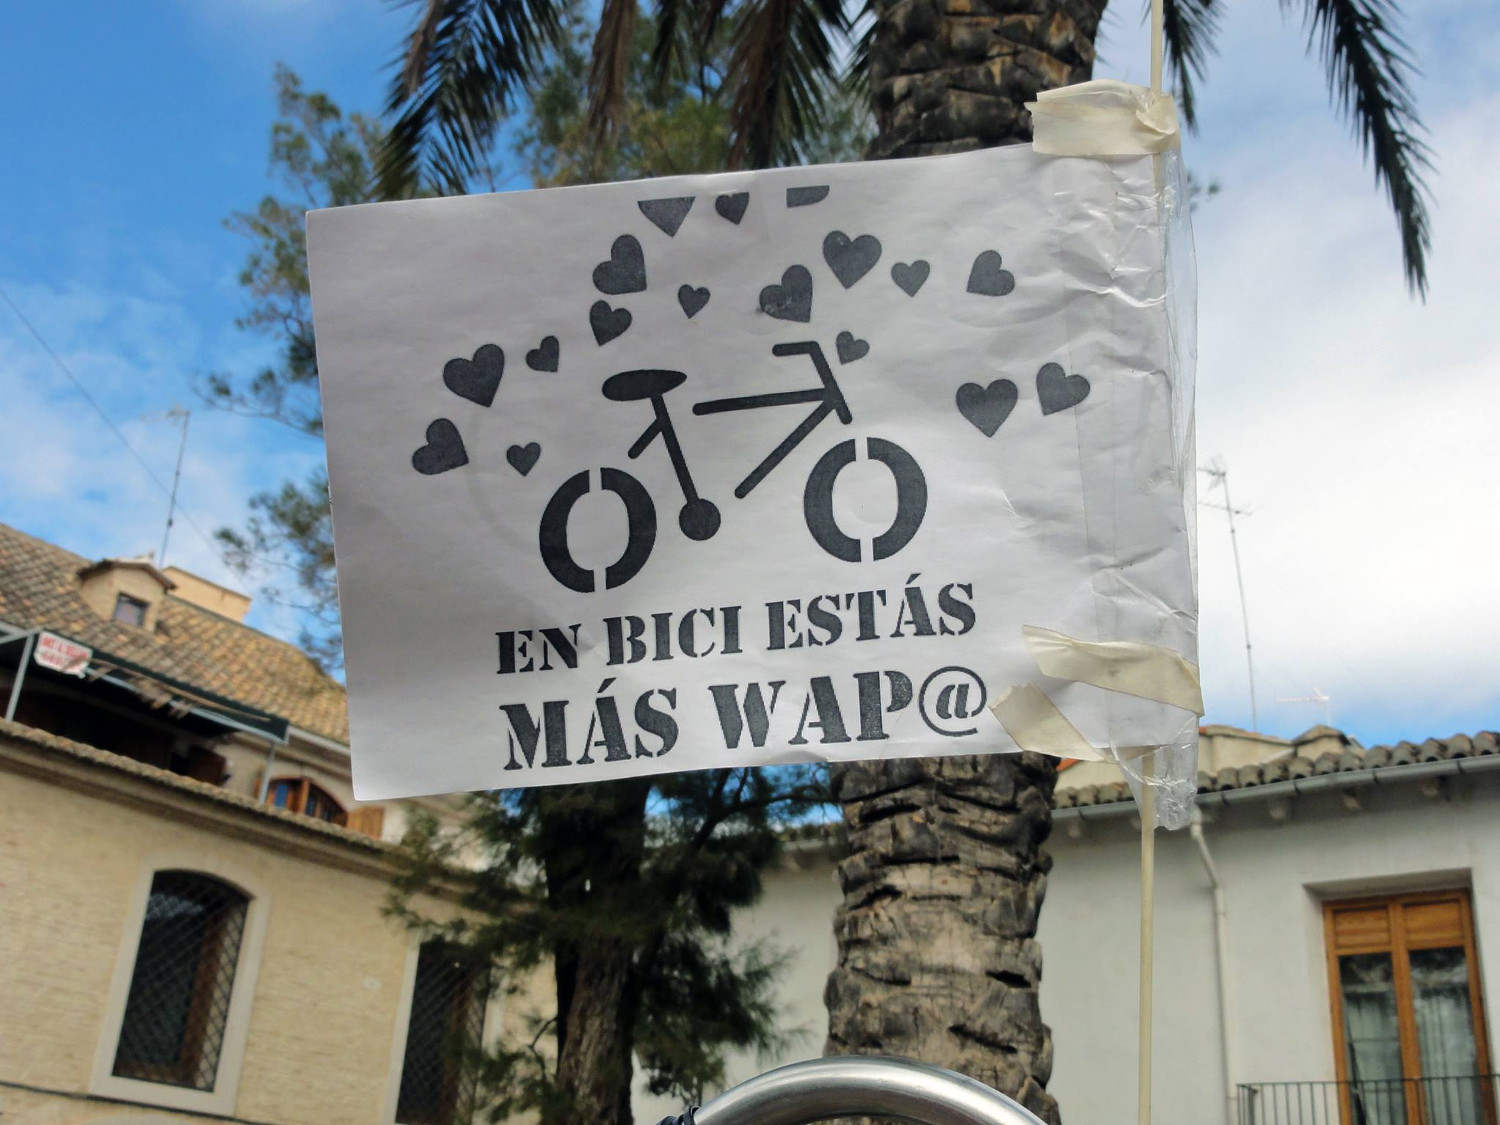 En bici estás más wap@